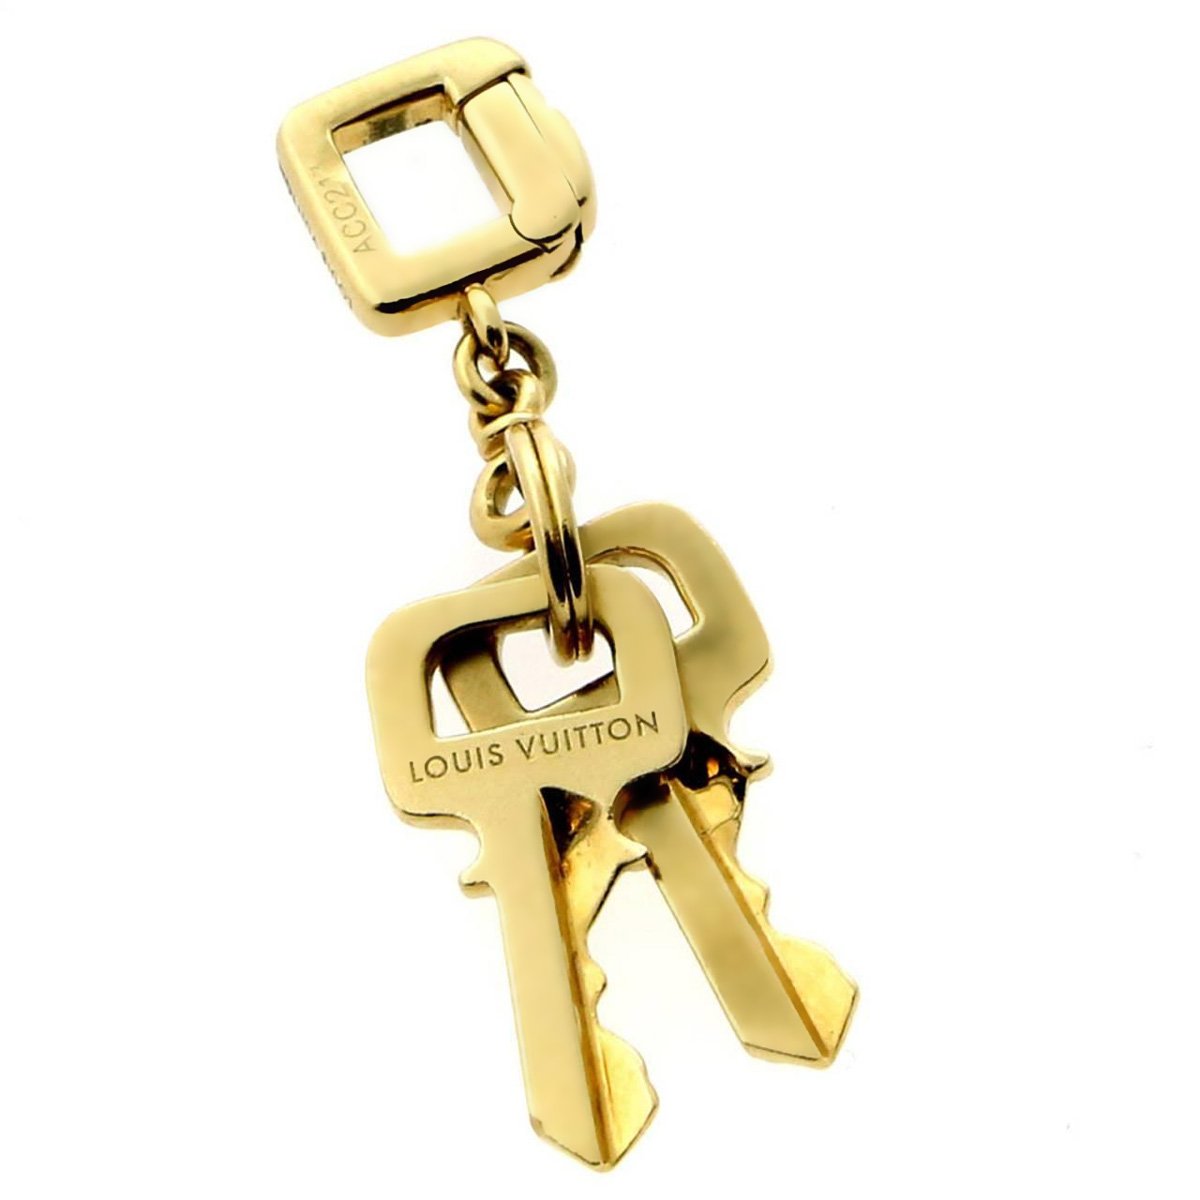 Louis vuitton gold keychain - Gem